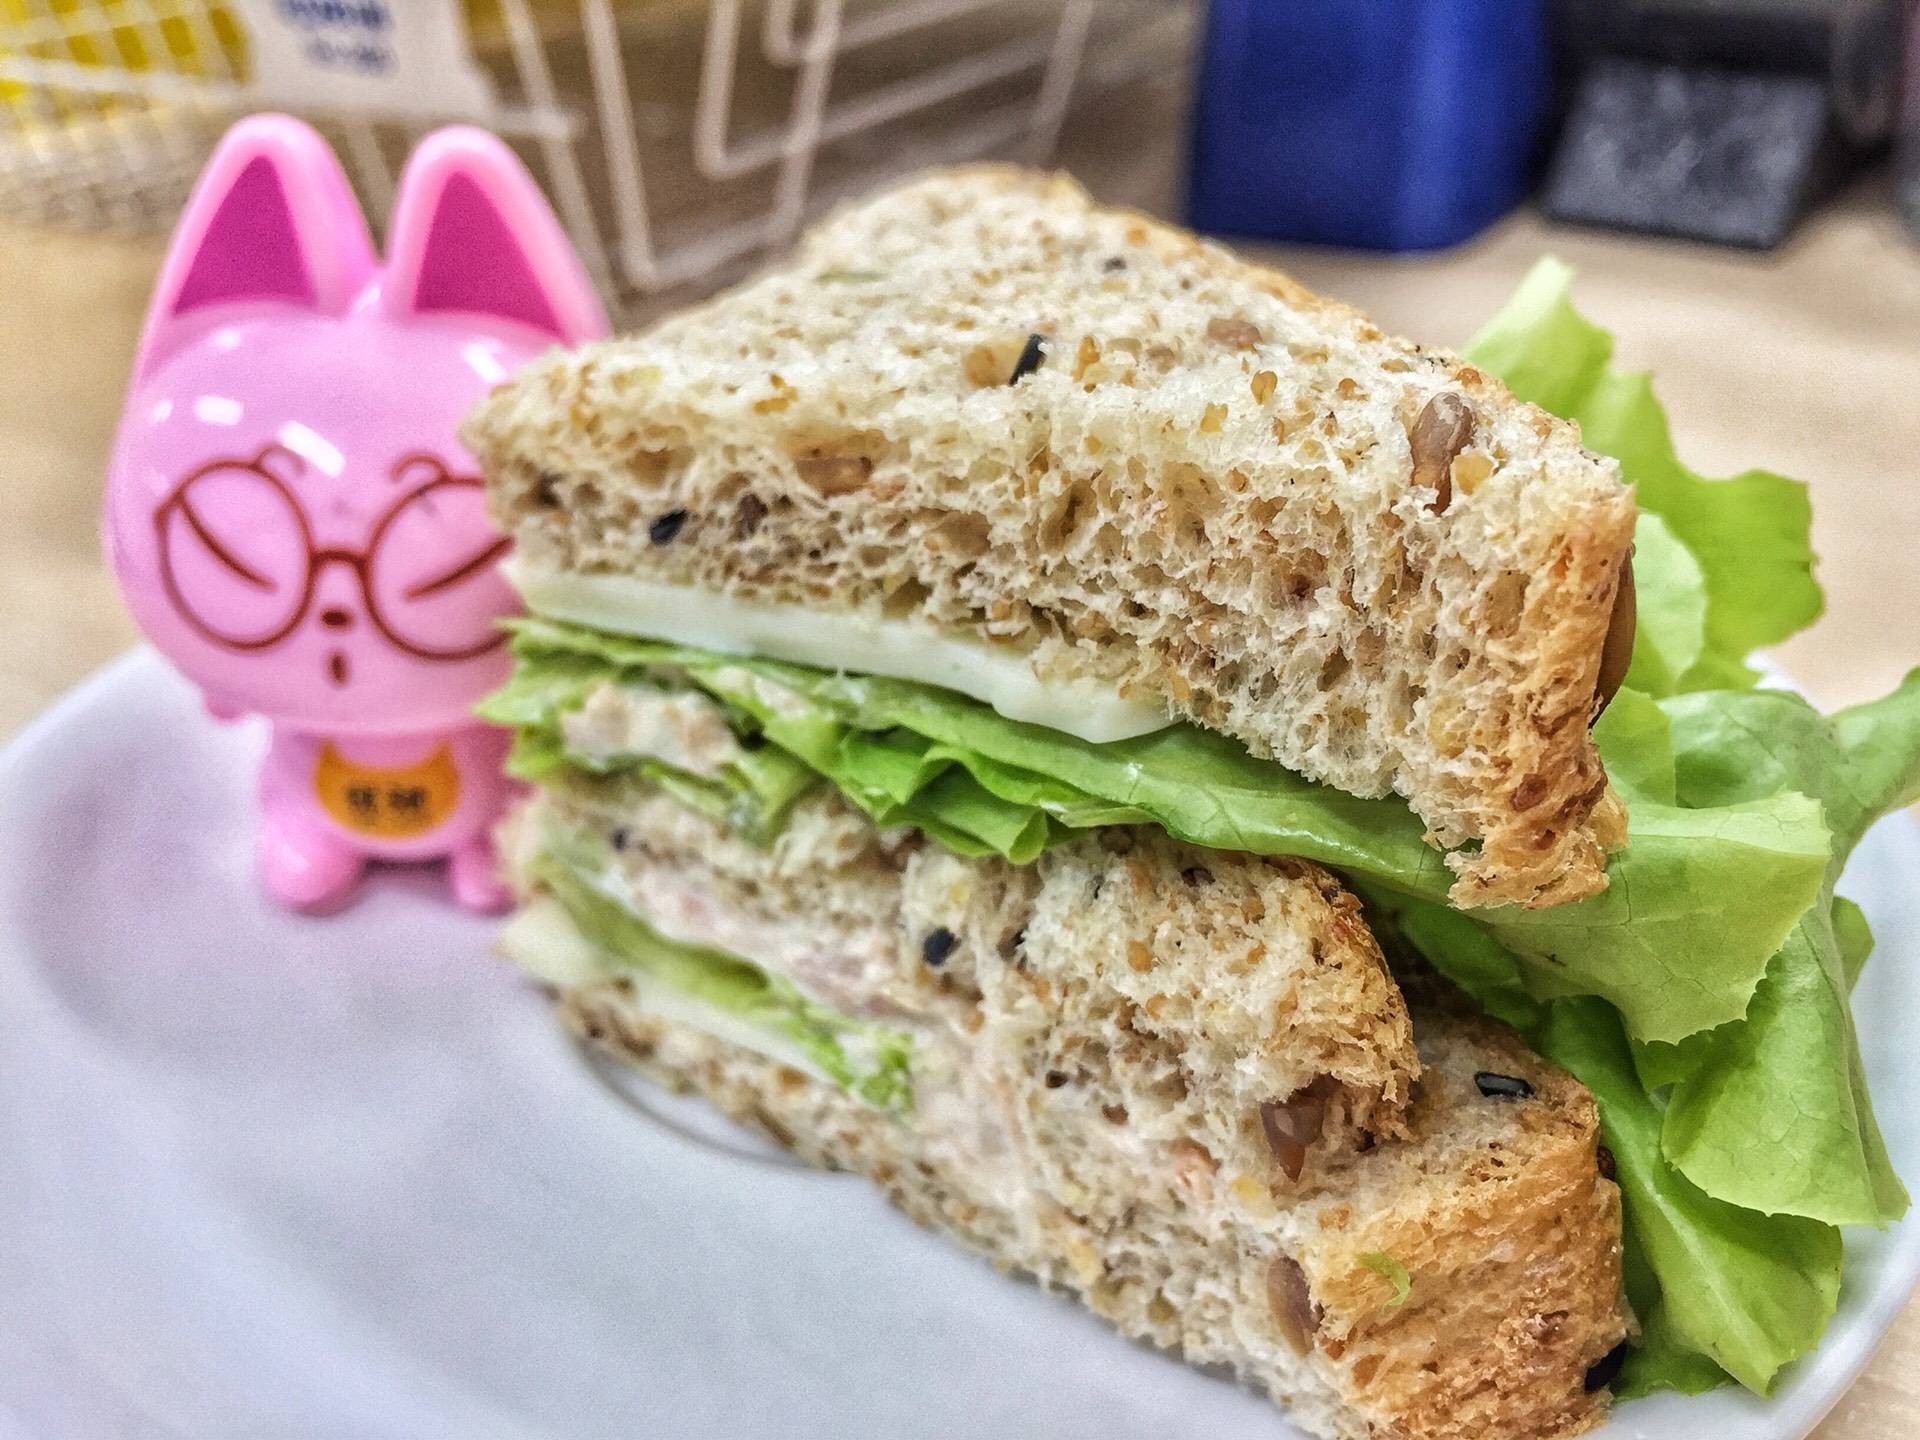 Officemade gourmet sandwich 